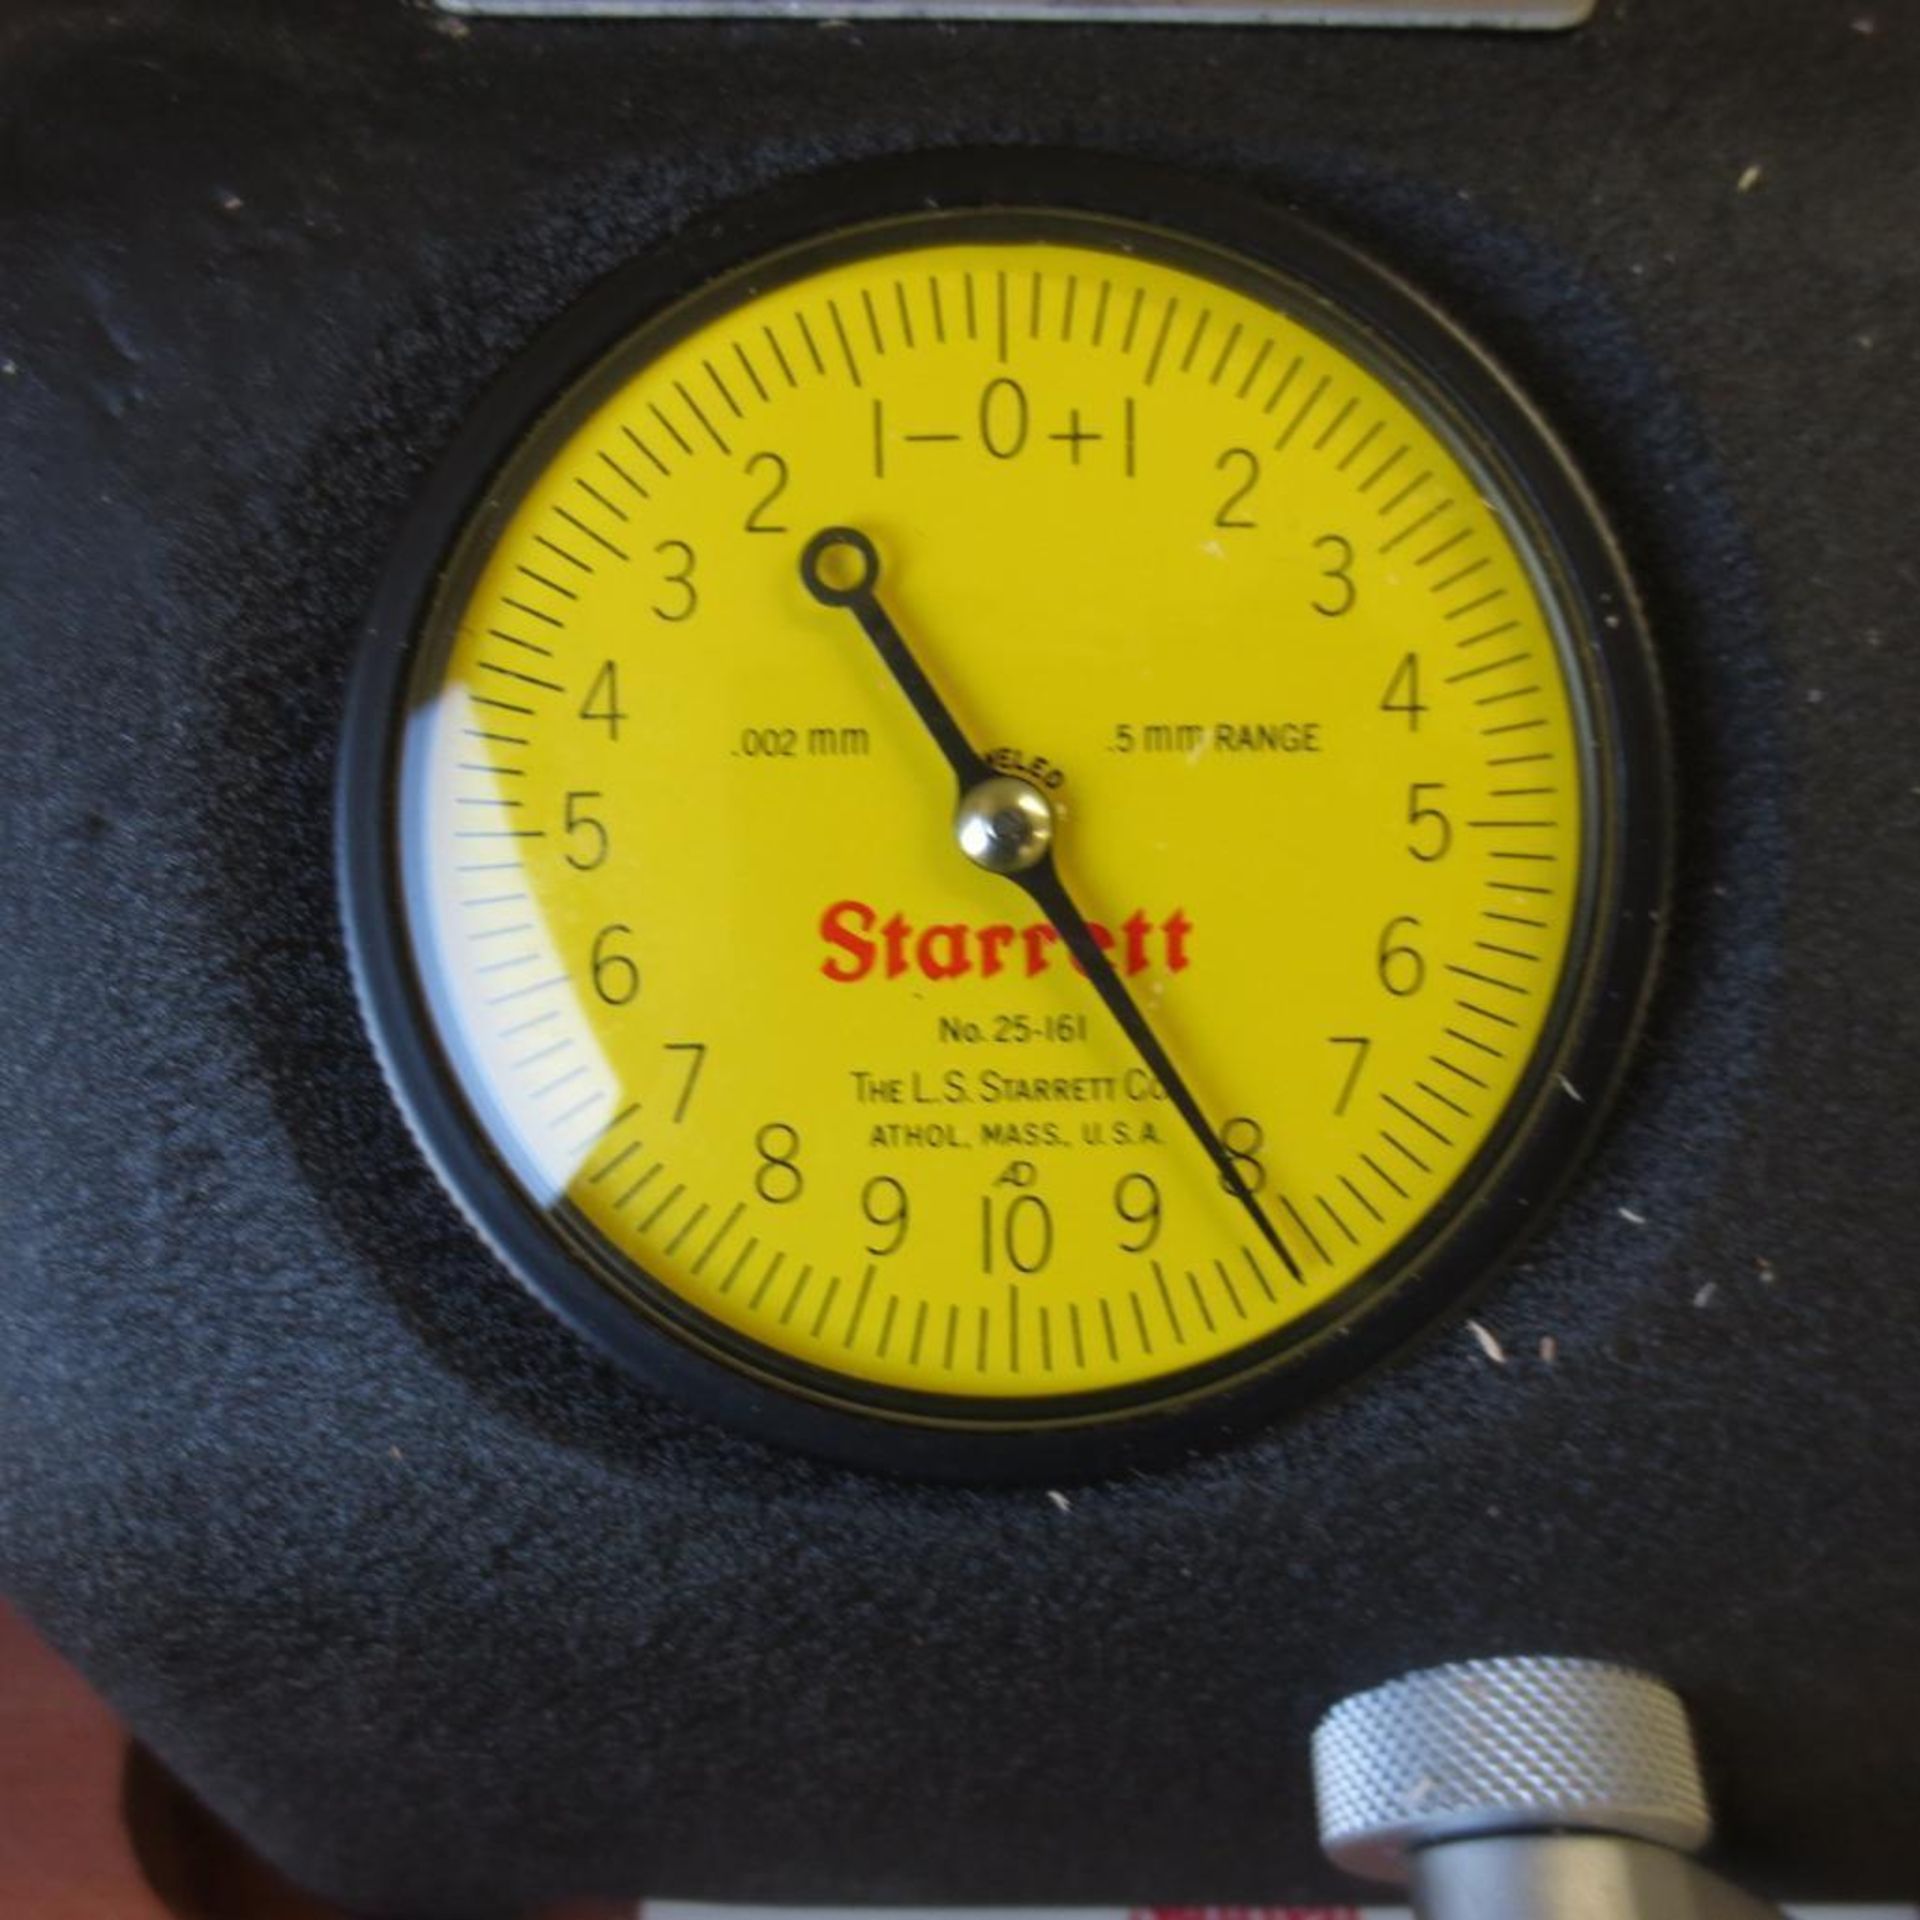 Starrett No 673M Bench Micrometer - Image 4 of 4